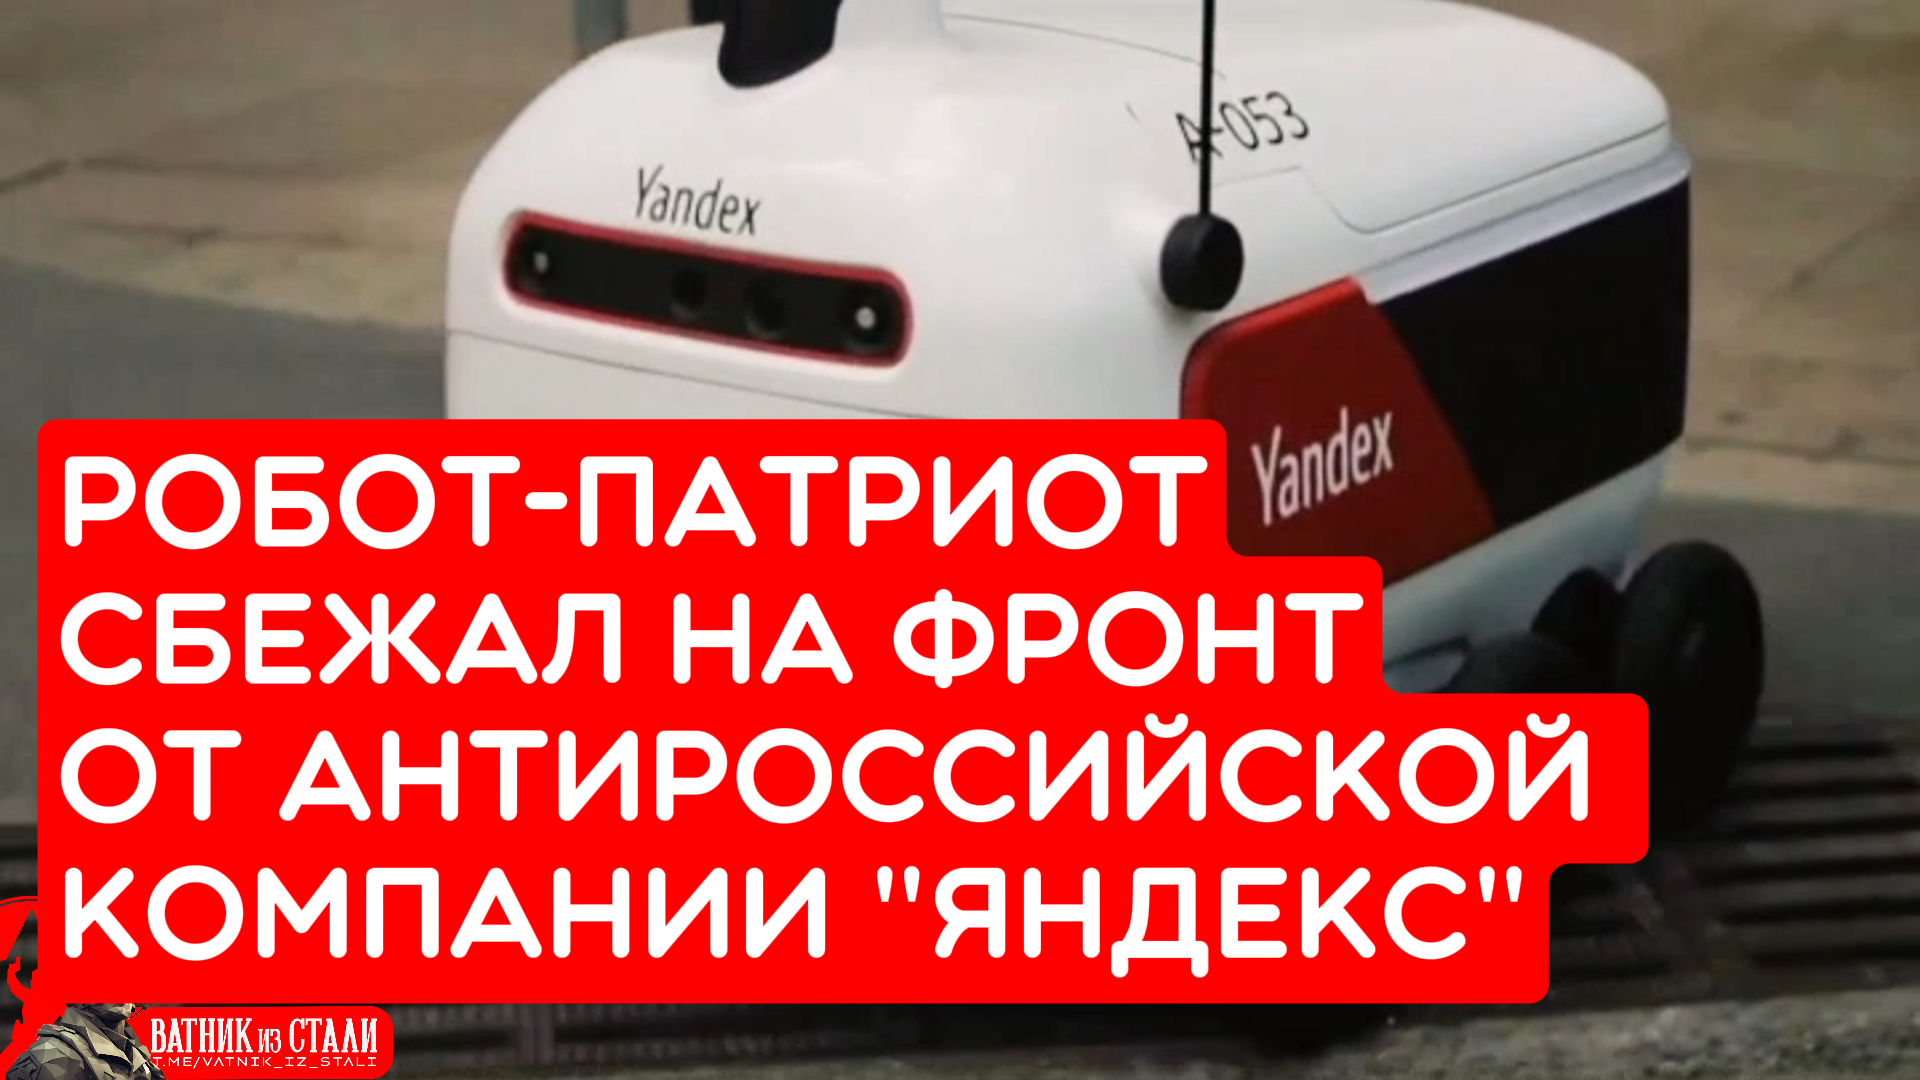 Робот-патриот сбежал на фронт от антироссийской компании Яндекс